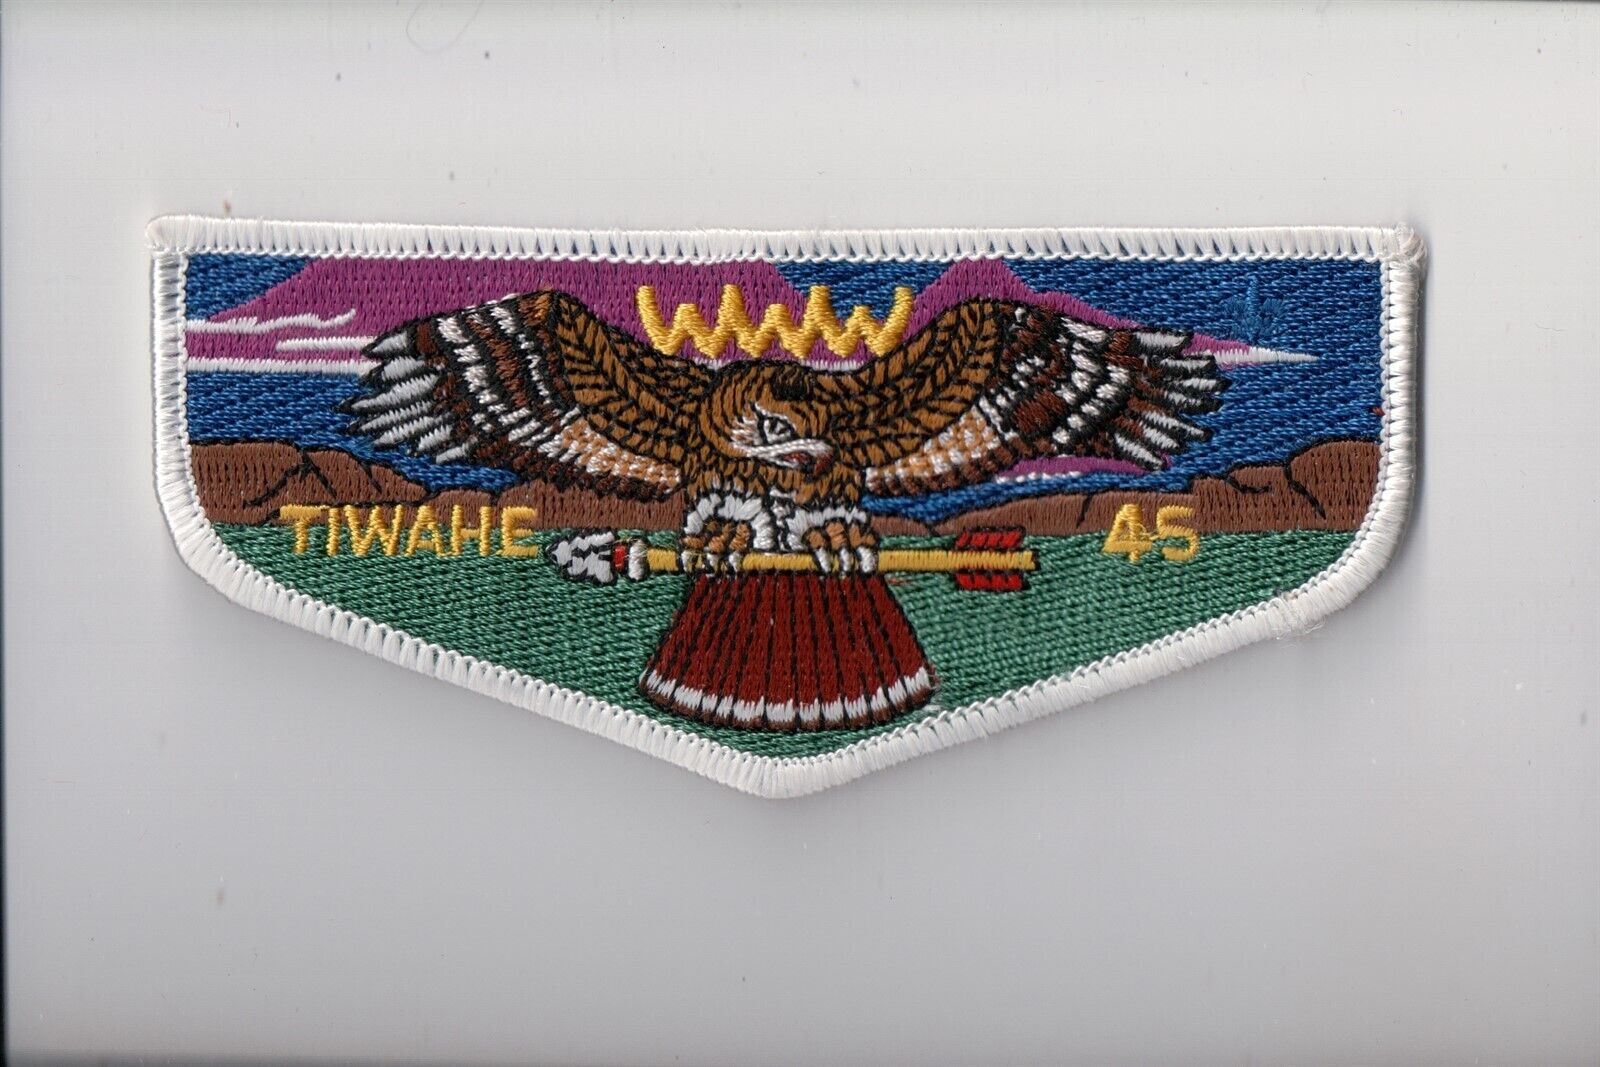 Lodge 45 Tiwahe OA flap (FC)